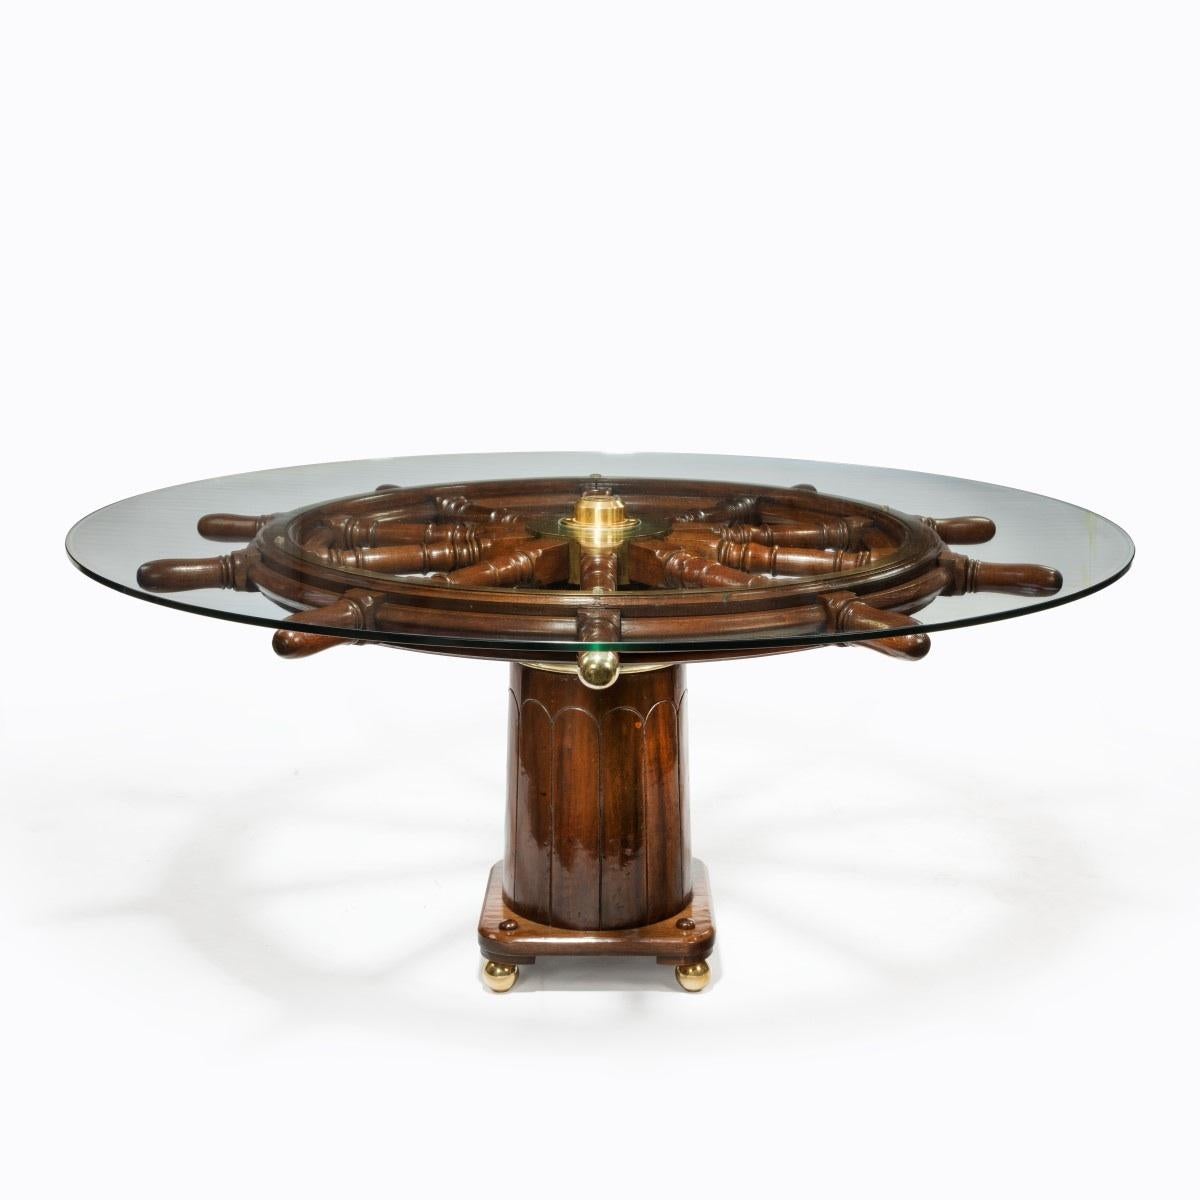 Table de salle à manger fabriquée à partir d'une roue de gouvernail de navire du XIXe siècle, sur un binnacle antique avec des pieds en bronze, anglais, vers 1850.
Avec un plateau en verre moderne.